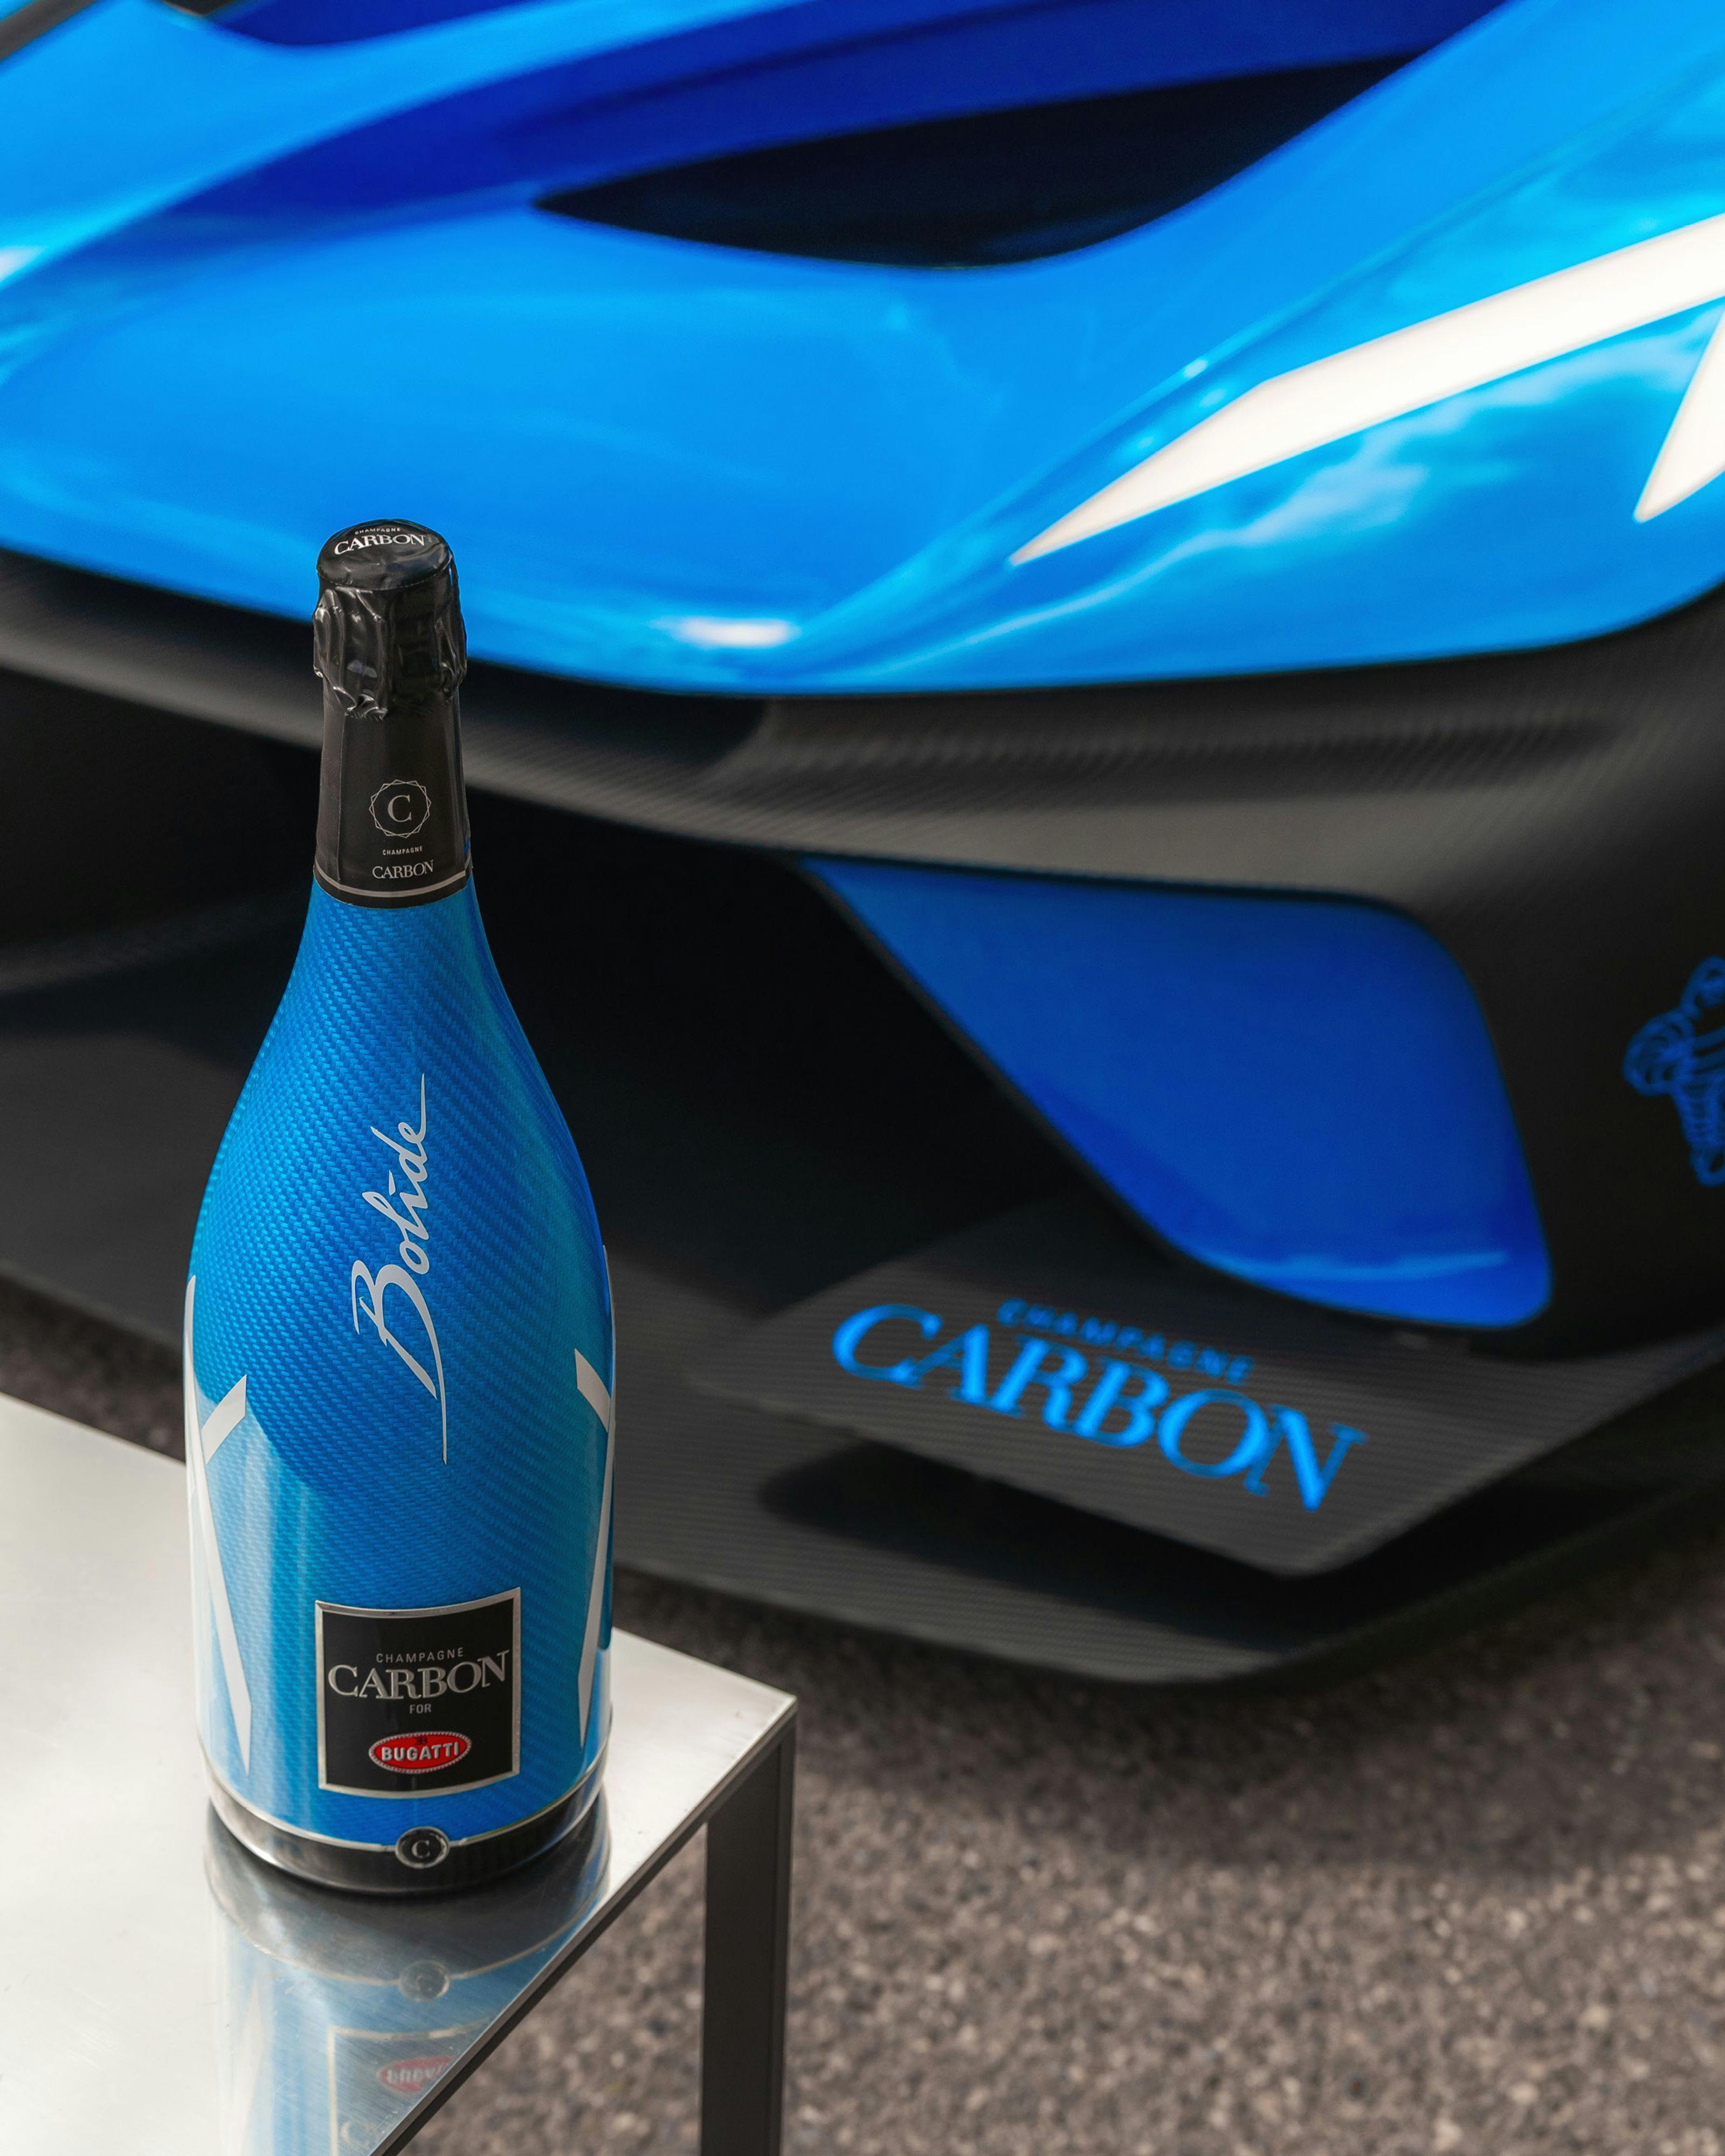 Bugatti und Champagne Carbon enthüllen ƎB.03 Edition – Champagner zu Ehren des Bolide